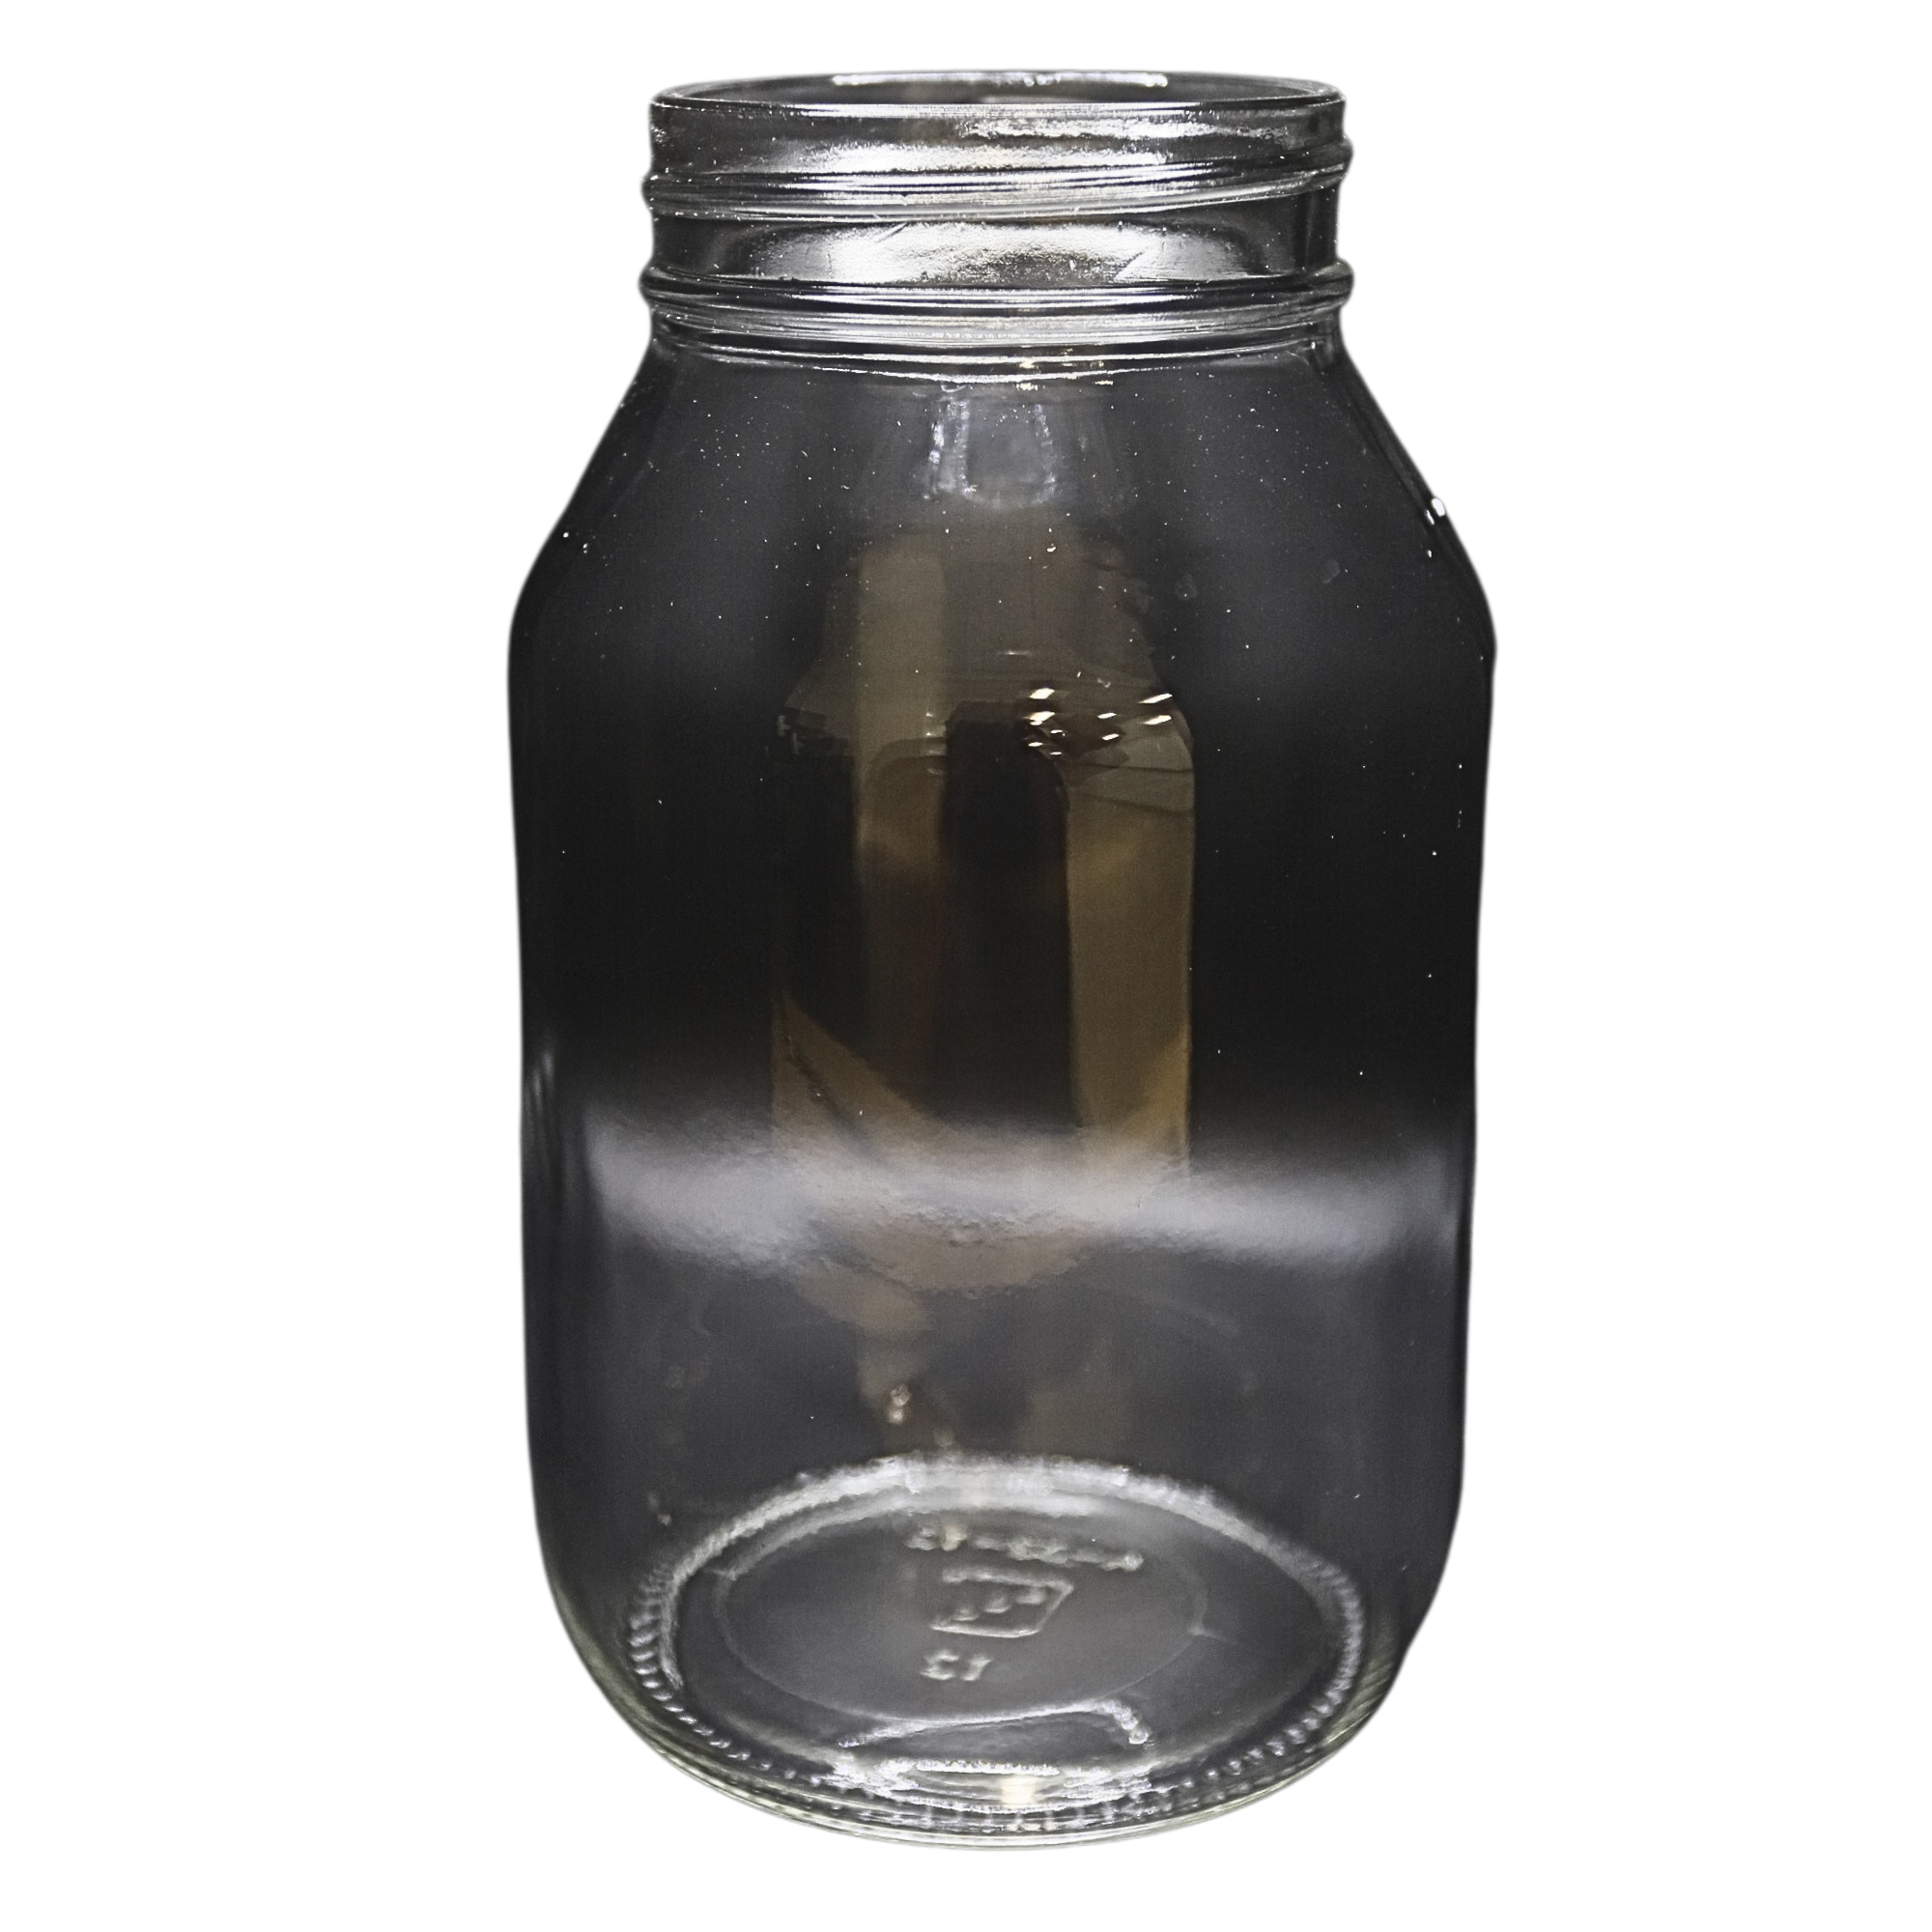 Gast | 32 oz Glass Jar | AA401 used on gast product line